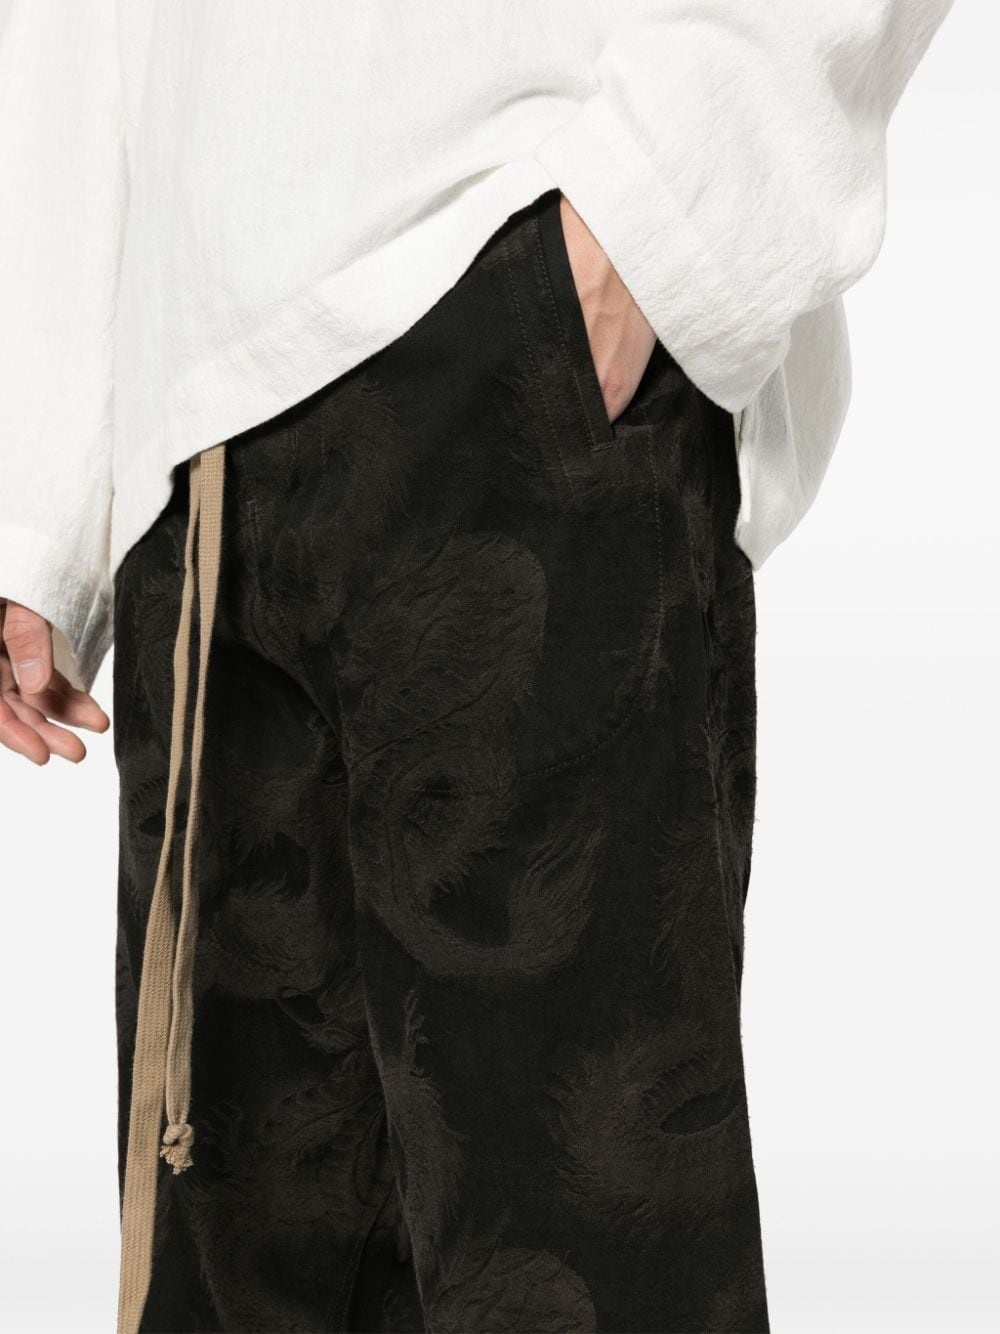 dragon-pattern trousers - 5